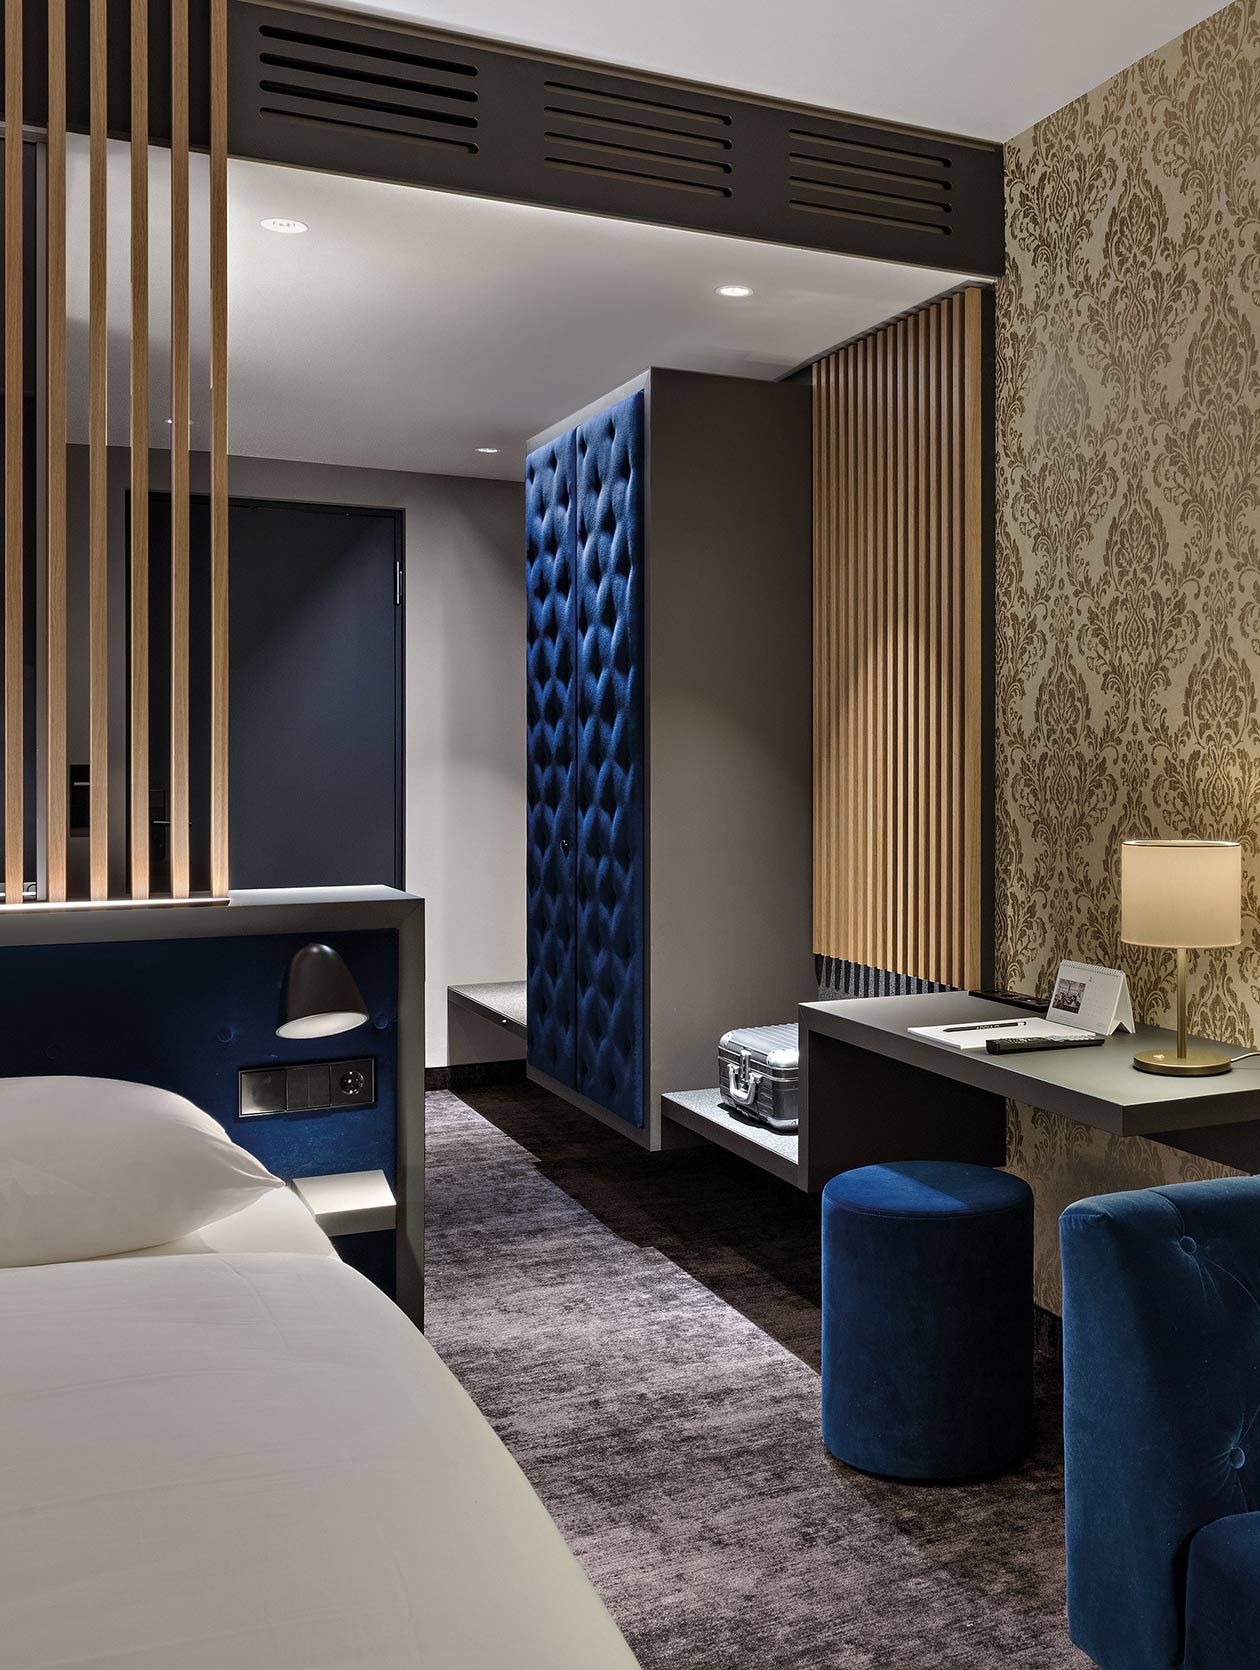 Luxuriös ausgestattete Zimmer in edlen Materialien im Emser Thermenhotel - Innenausbau und Ausstattung durch APPIA Contract GmbH